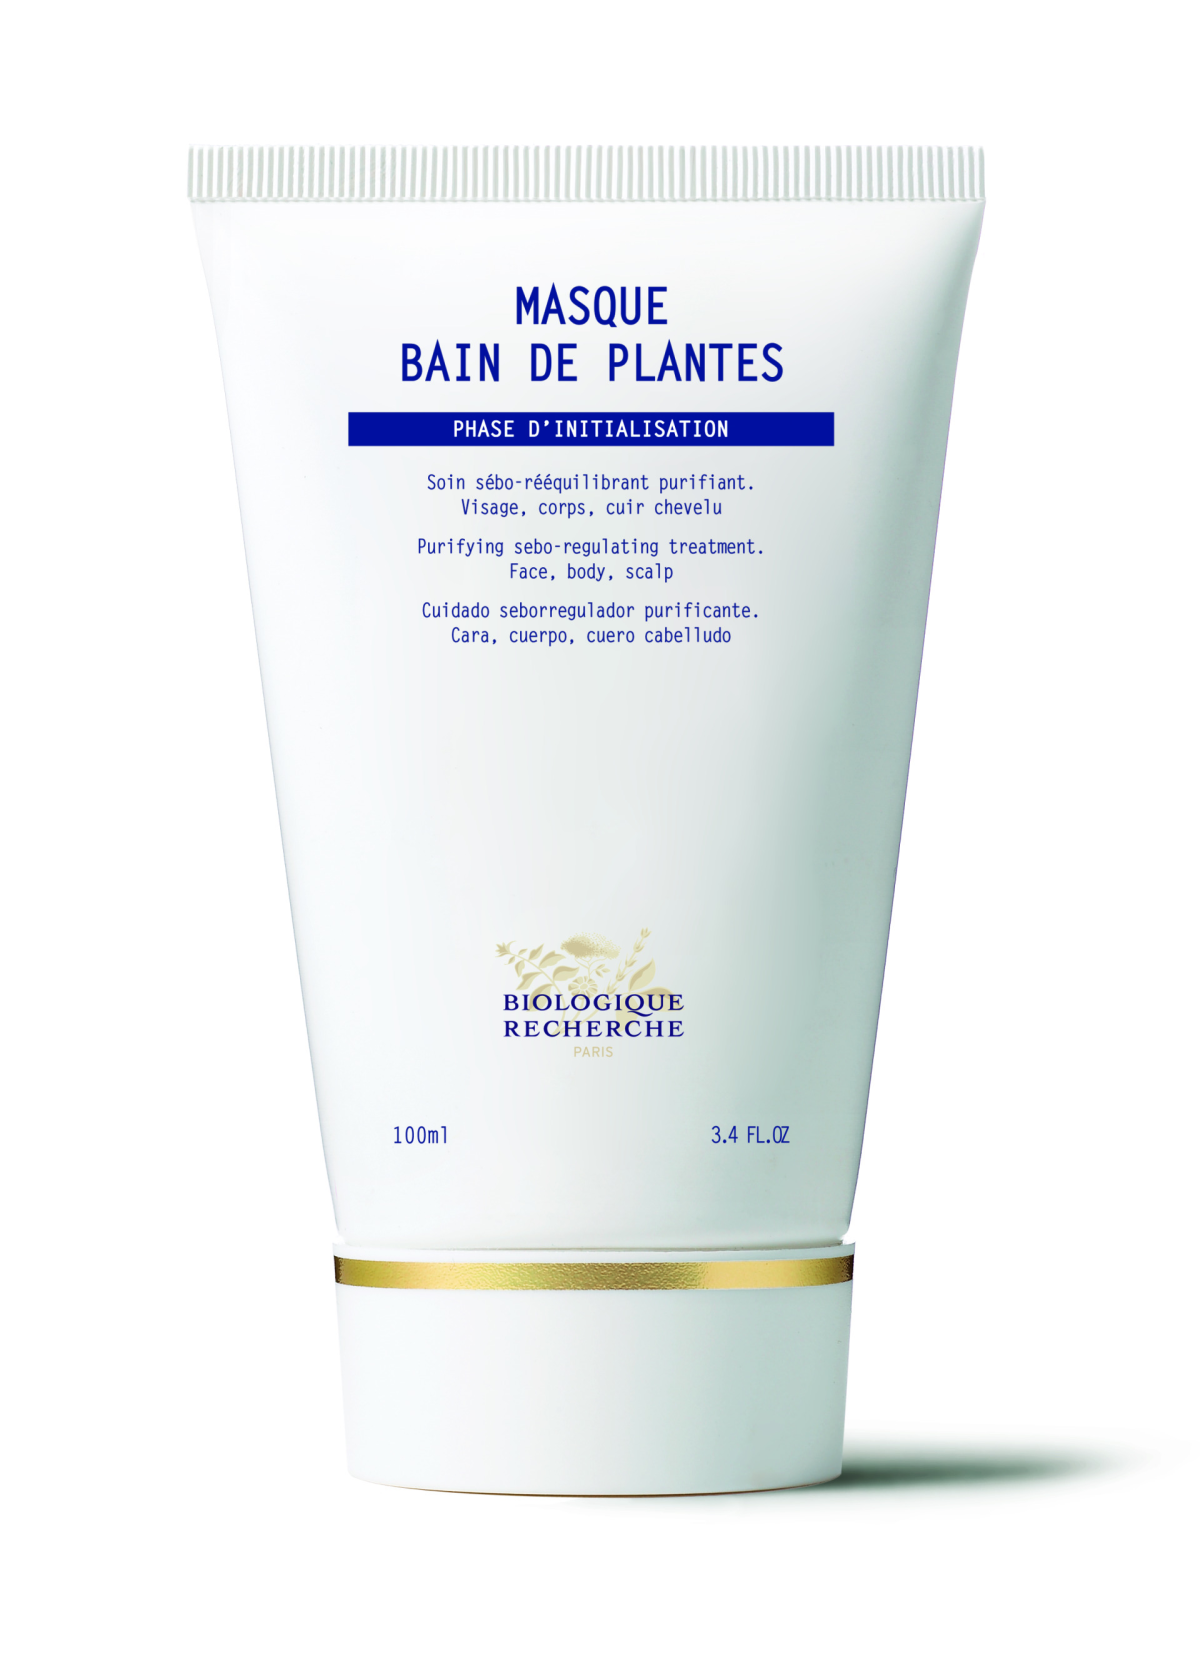 Masque Bain de Plantes – tretman za lice, tijelo i vlasište za pročišćavanje sebuma